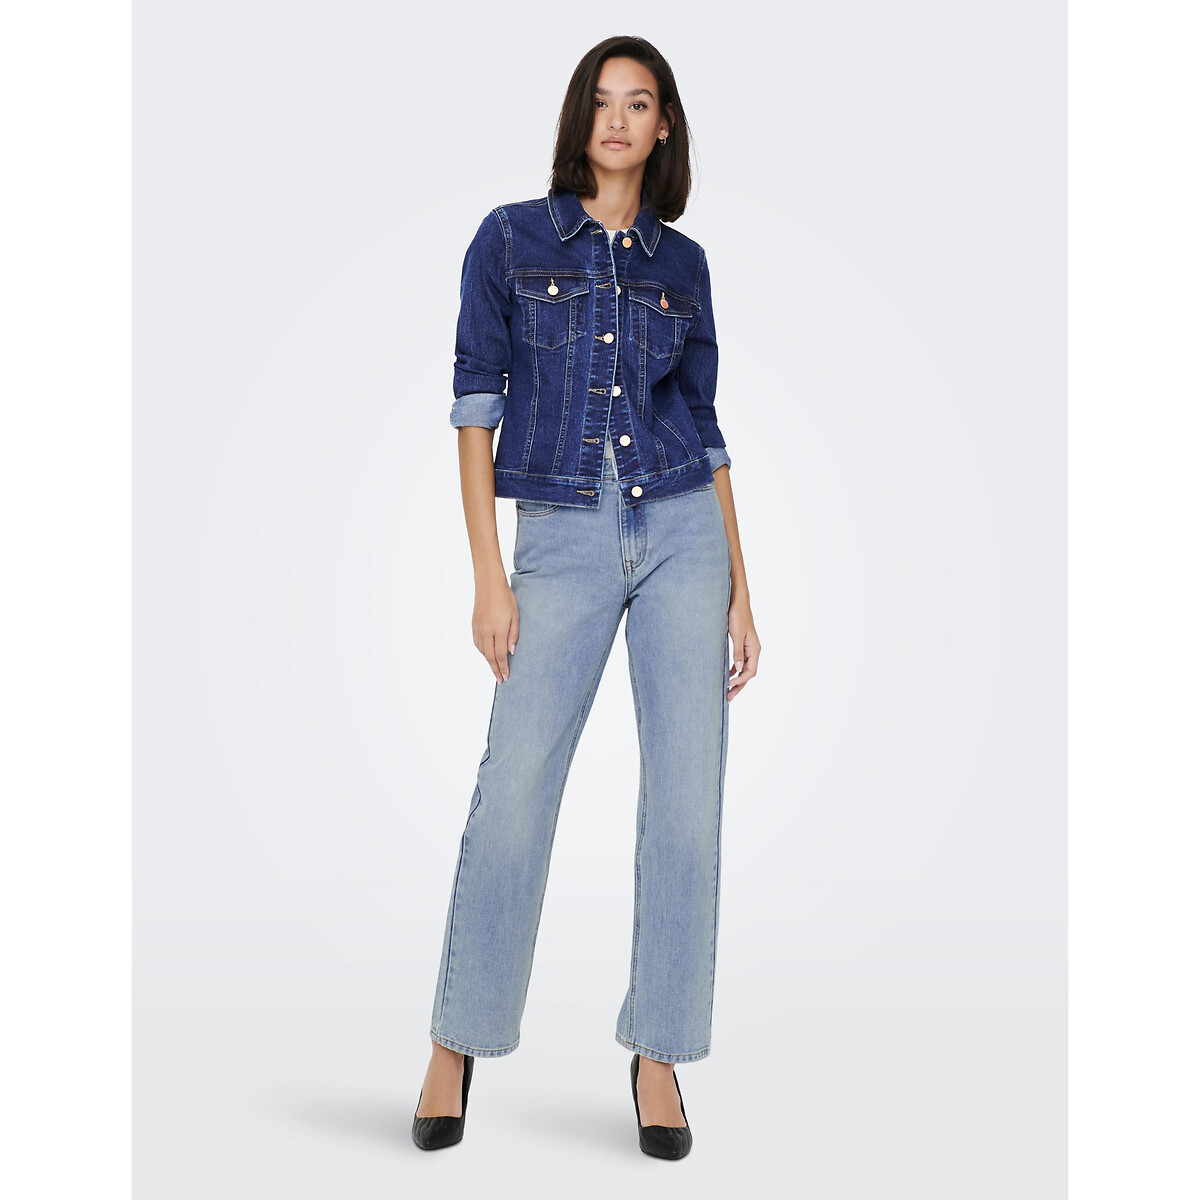 Жакет Из джинсовой ткани S синий LaRedoute, размер S - фото 3